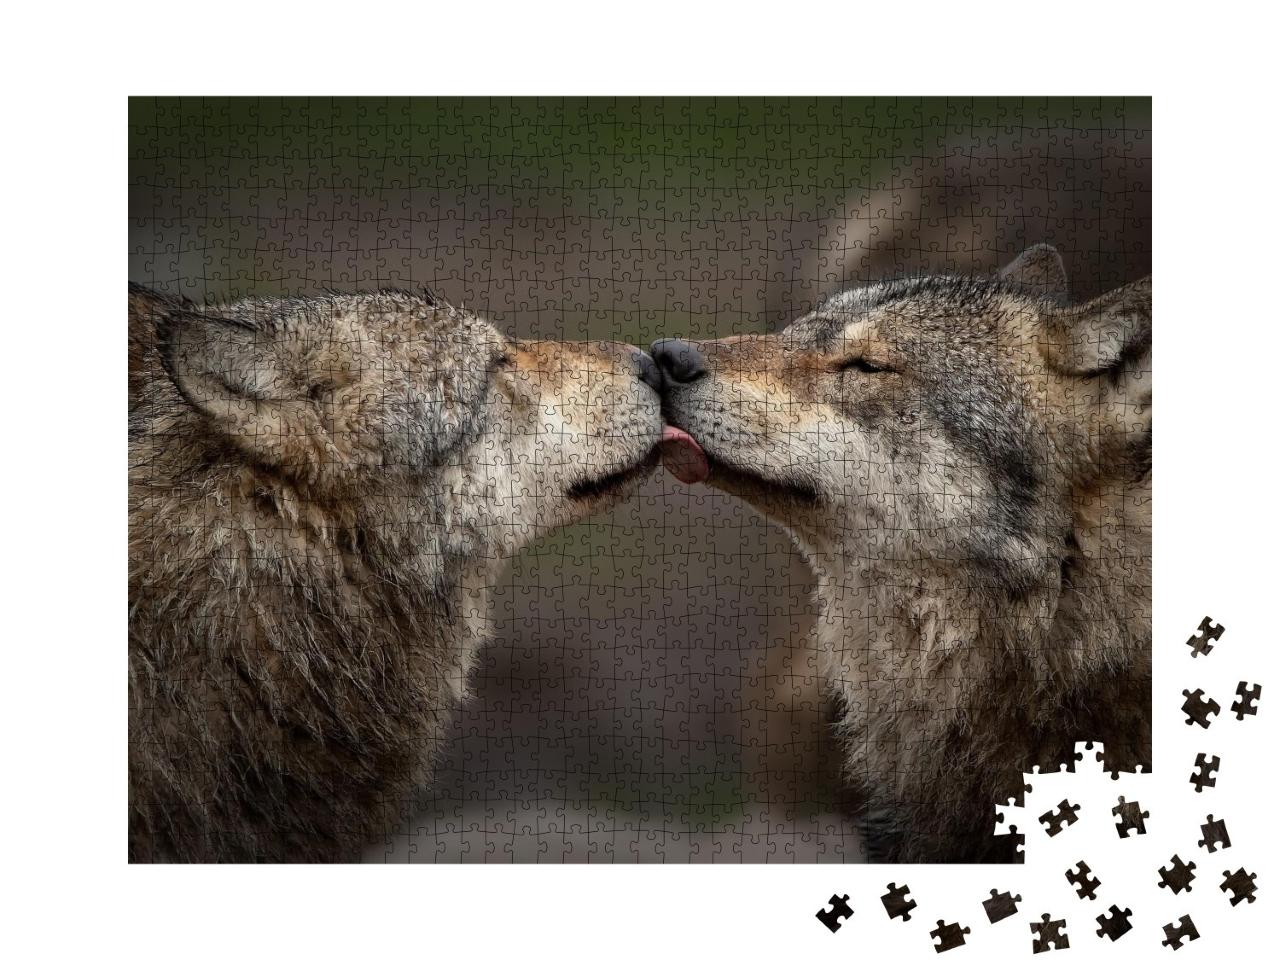 Puzzle de 1000 pièces « La confiance entre les loups »